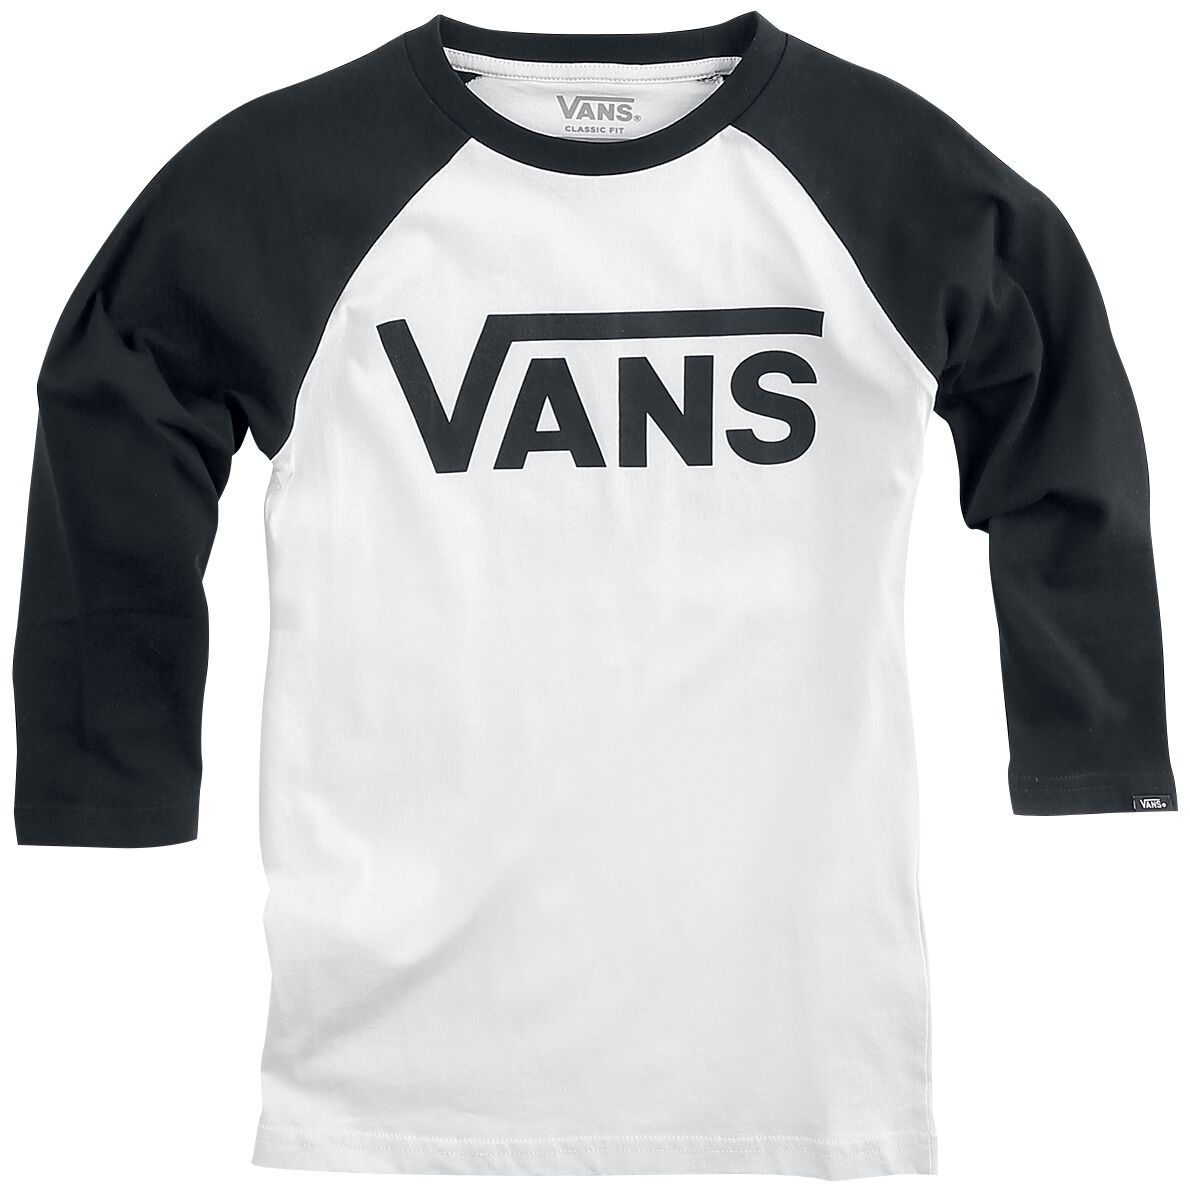 Vans Kids Langarmshirt - BY VANS Classic Raglan - S bis XL - für Mädchen & Jungen - Größe M - schwarz/weiß von Vans Kids